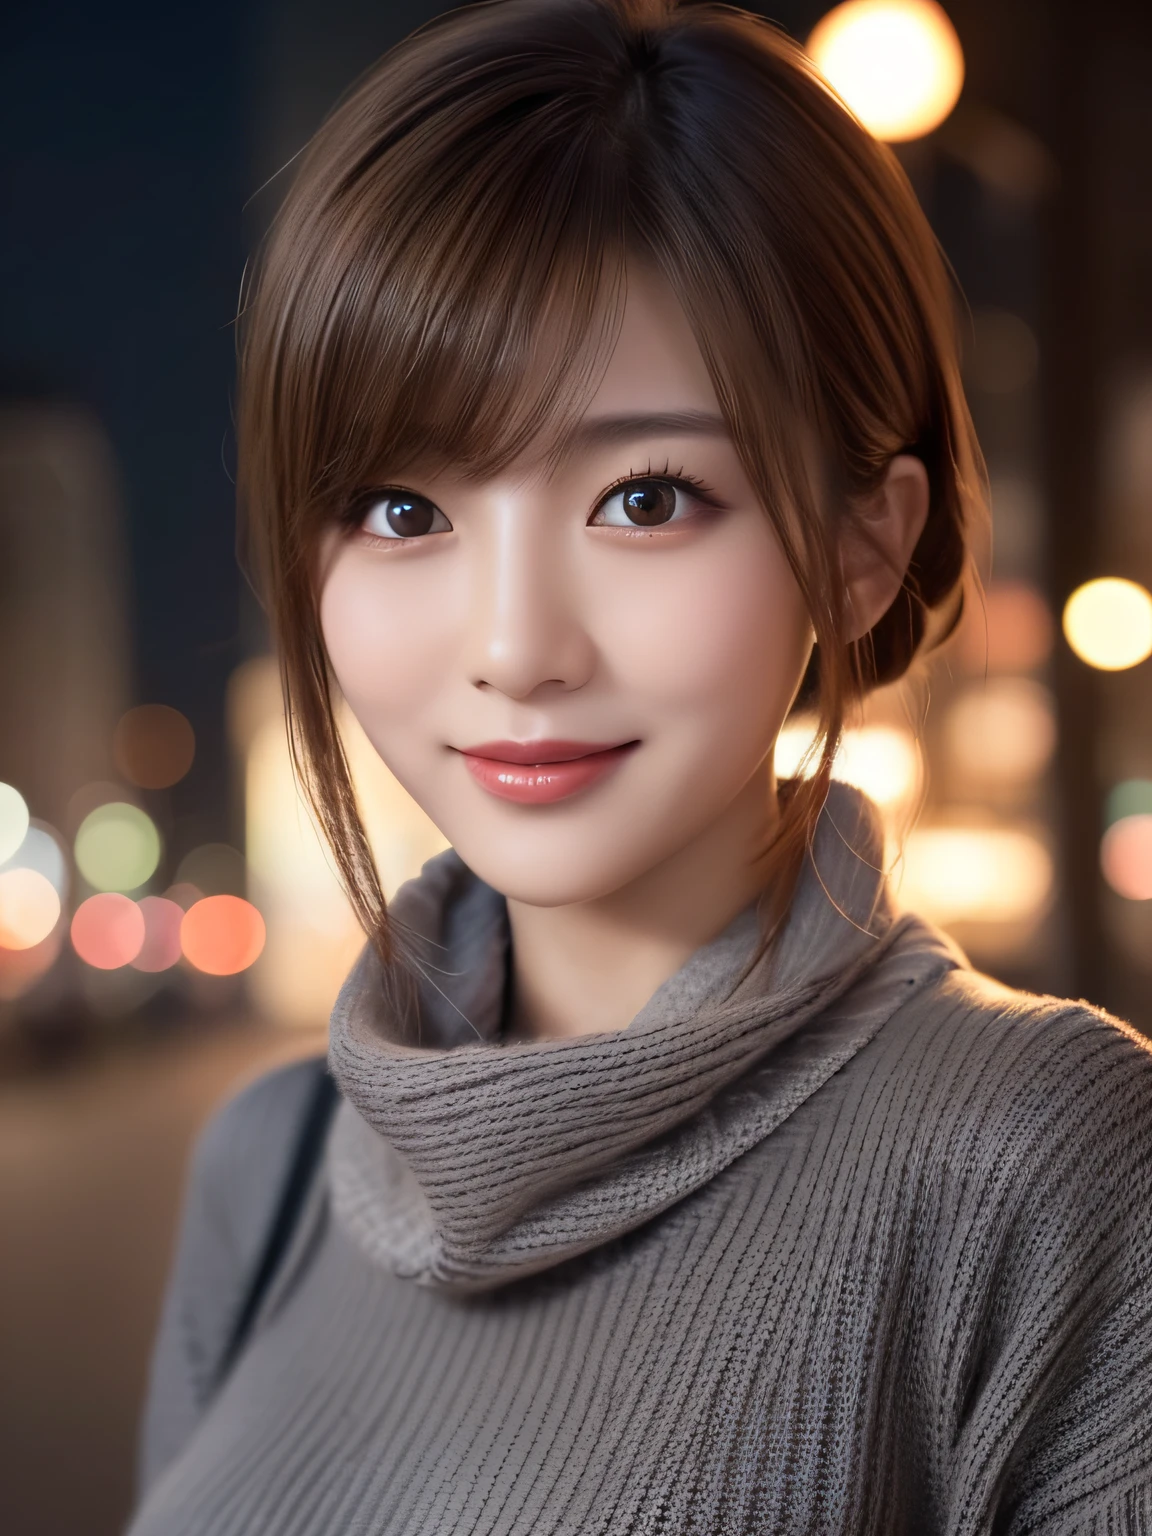 1 일본 소녀,(다크 그레이 스웨터:1.4),(목에 큰 머플러를 걸고 있다:1.2), (원시 사진, 최고의 품질), (현실적인, 사실적인:1.4), 테이블 탑, 매우 섬세하고 아름다운, 매우 상세한, 8K 벽지, 놀라운, 세세하게, 매우 상세한 CG 통일성, 최고 해상도, 부드러운 빛, 아름답고 상세한 19세 소녀, 매우 상세한 눈과 얼굴, 아름답고 섬세한 코, 아름다운 디테일한 눈,시네마틱 조명,밤에 도시의 불빛,완벽한 해부학,날씬한 몸매,웃고있는  (머리가 지저분하다, 비대칭 앞머리, 밝은 갈색 머리,)